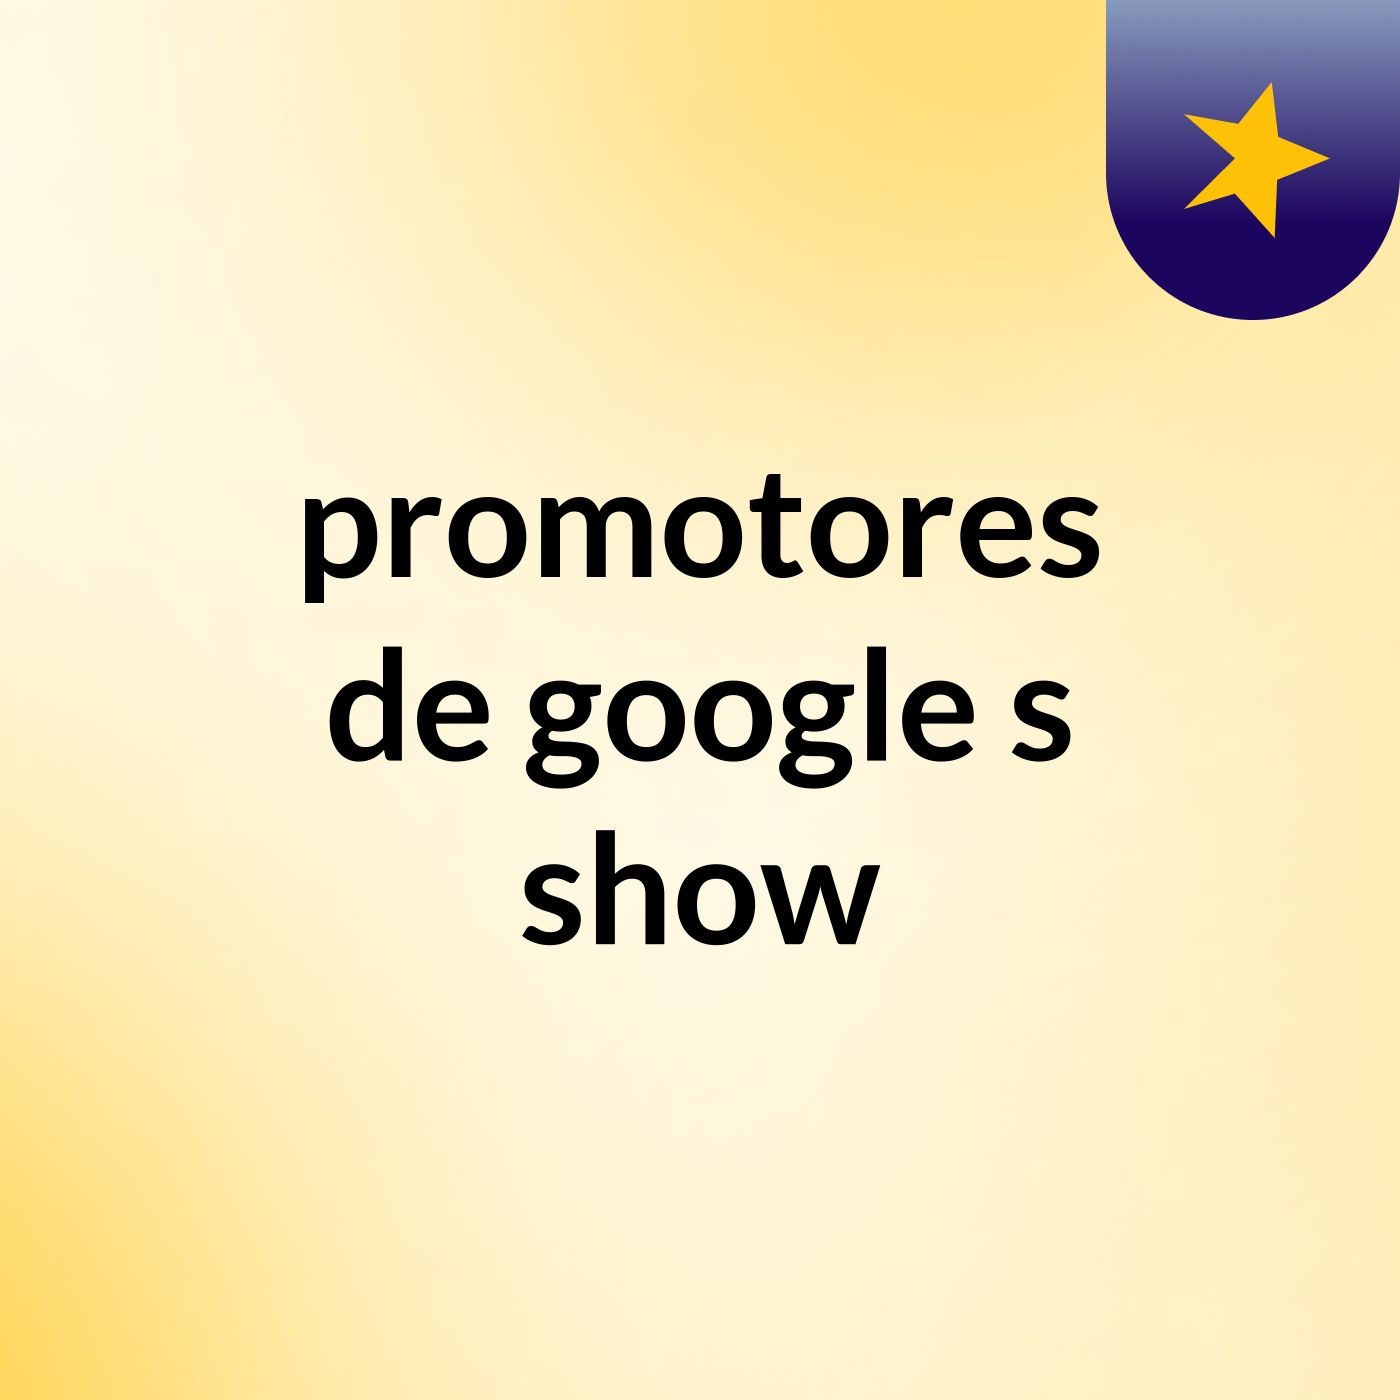 promotores de google's show